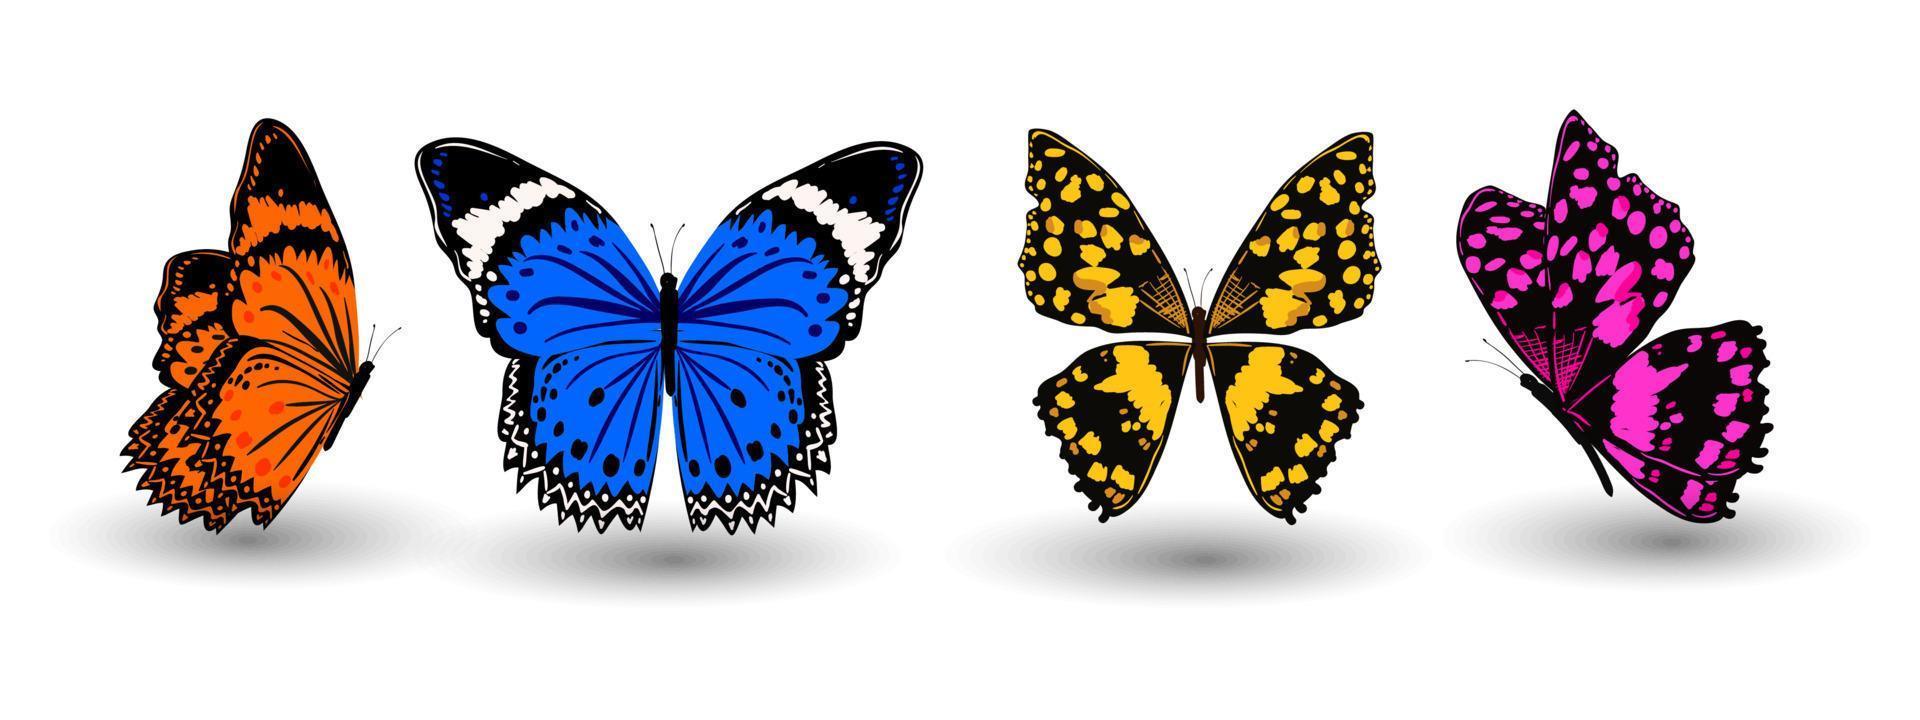 icône papillon. insecte papillon réaliste avec de belles ailes de couleur jaune orange violet bleu. signe animal pour la création de logo, affiche, impression de t-shirt, illustration vectorielle isolée sur fond blanc vecteur